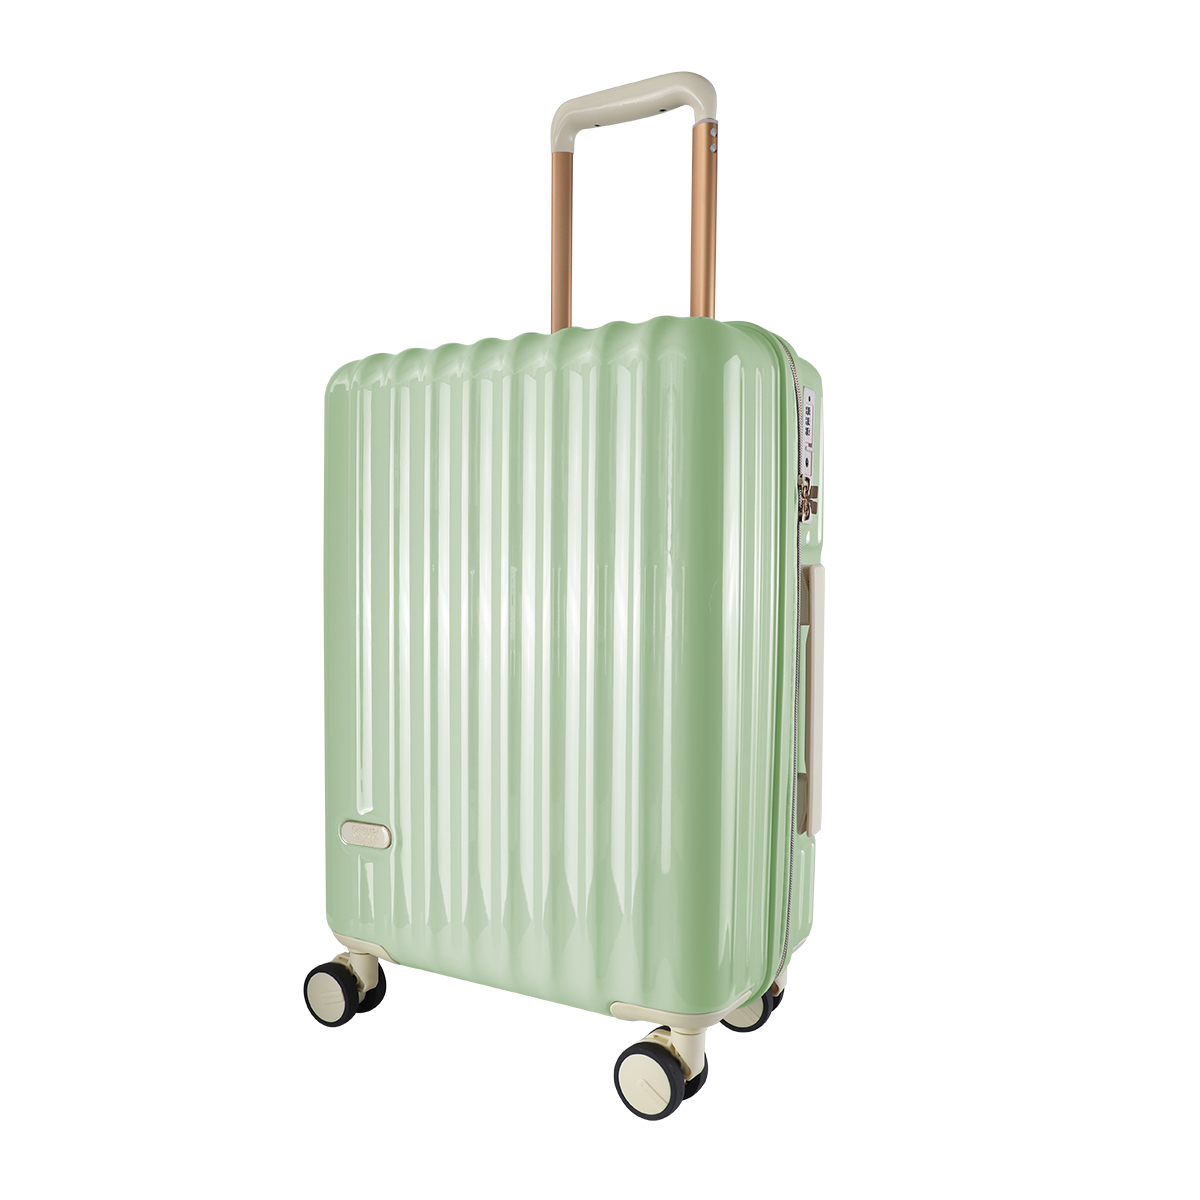 スーツケース 軽量 Sサイズ 39L 1〜2泊 ピンク 機内持ち込みサイズ TSAロック キャリーケース キャリーバッグ おしゃれ 旅行用品